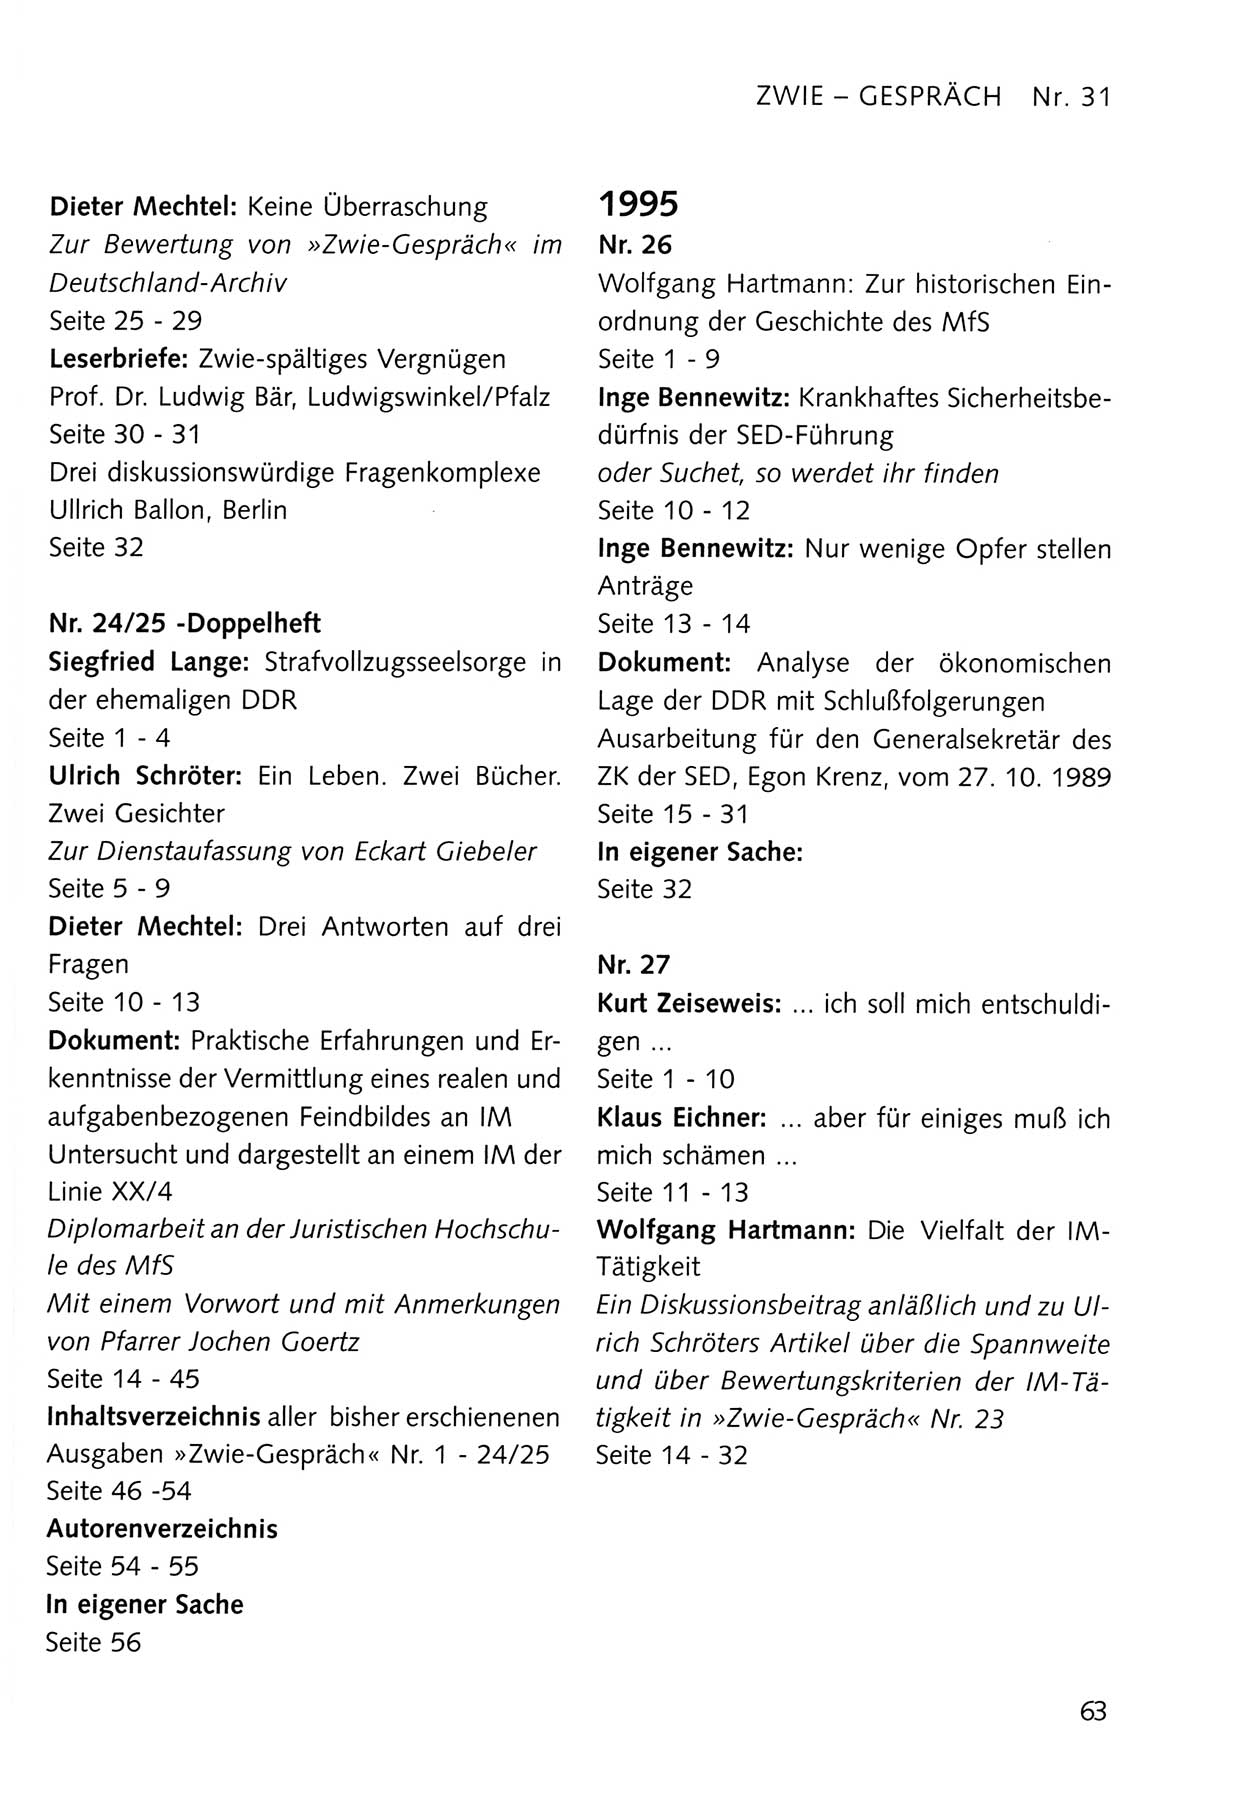 Zwie-Gespräch, Beiträge zum Umgang mit der Staatssicherheits-Vergangenheit [Deutsche Demokratische Republik (DDR)], Ausgabe Nr. 31, Berlin 1995, Seite 63 (Zwie-Gespr. Ausg. 31 1995, S. 63)